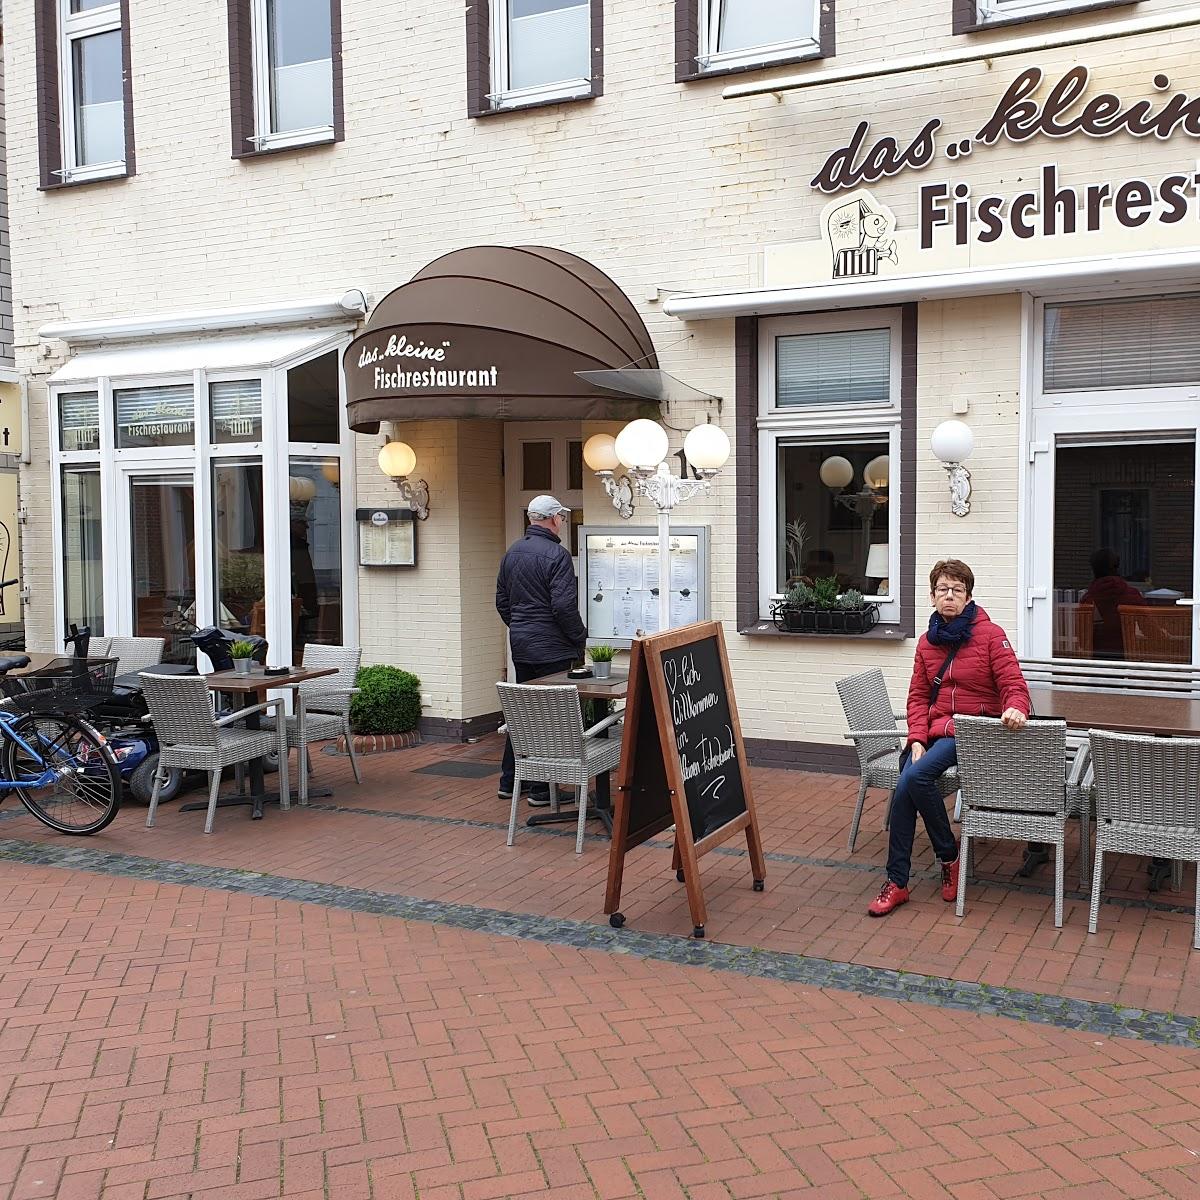 Restaurant "Das kleine Fischrestaurant" in Norderney